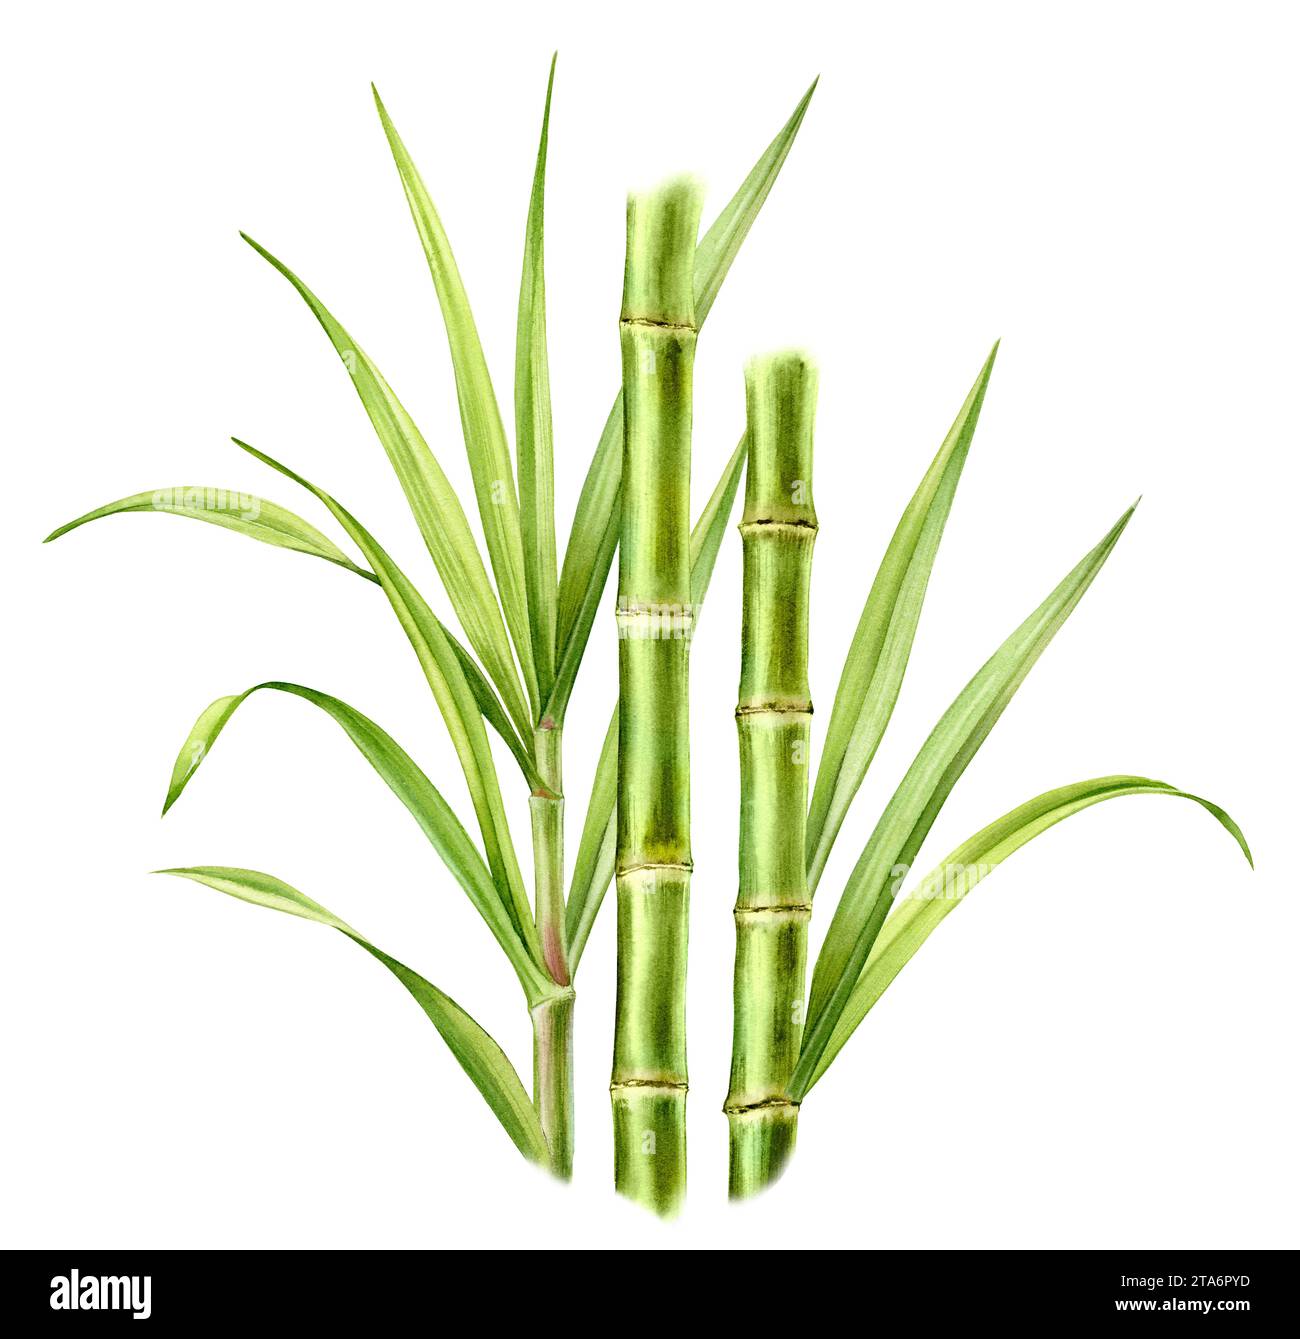 Bambusstämme und Blätter in Aquarellfarben. Großer Blumenstrauß mit Grün. Realistische botanische Illustration mit frischer Bambuspflanze. Handgezeichnete Blumenkomposition Stockfoto